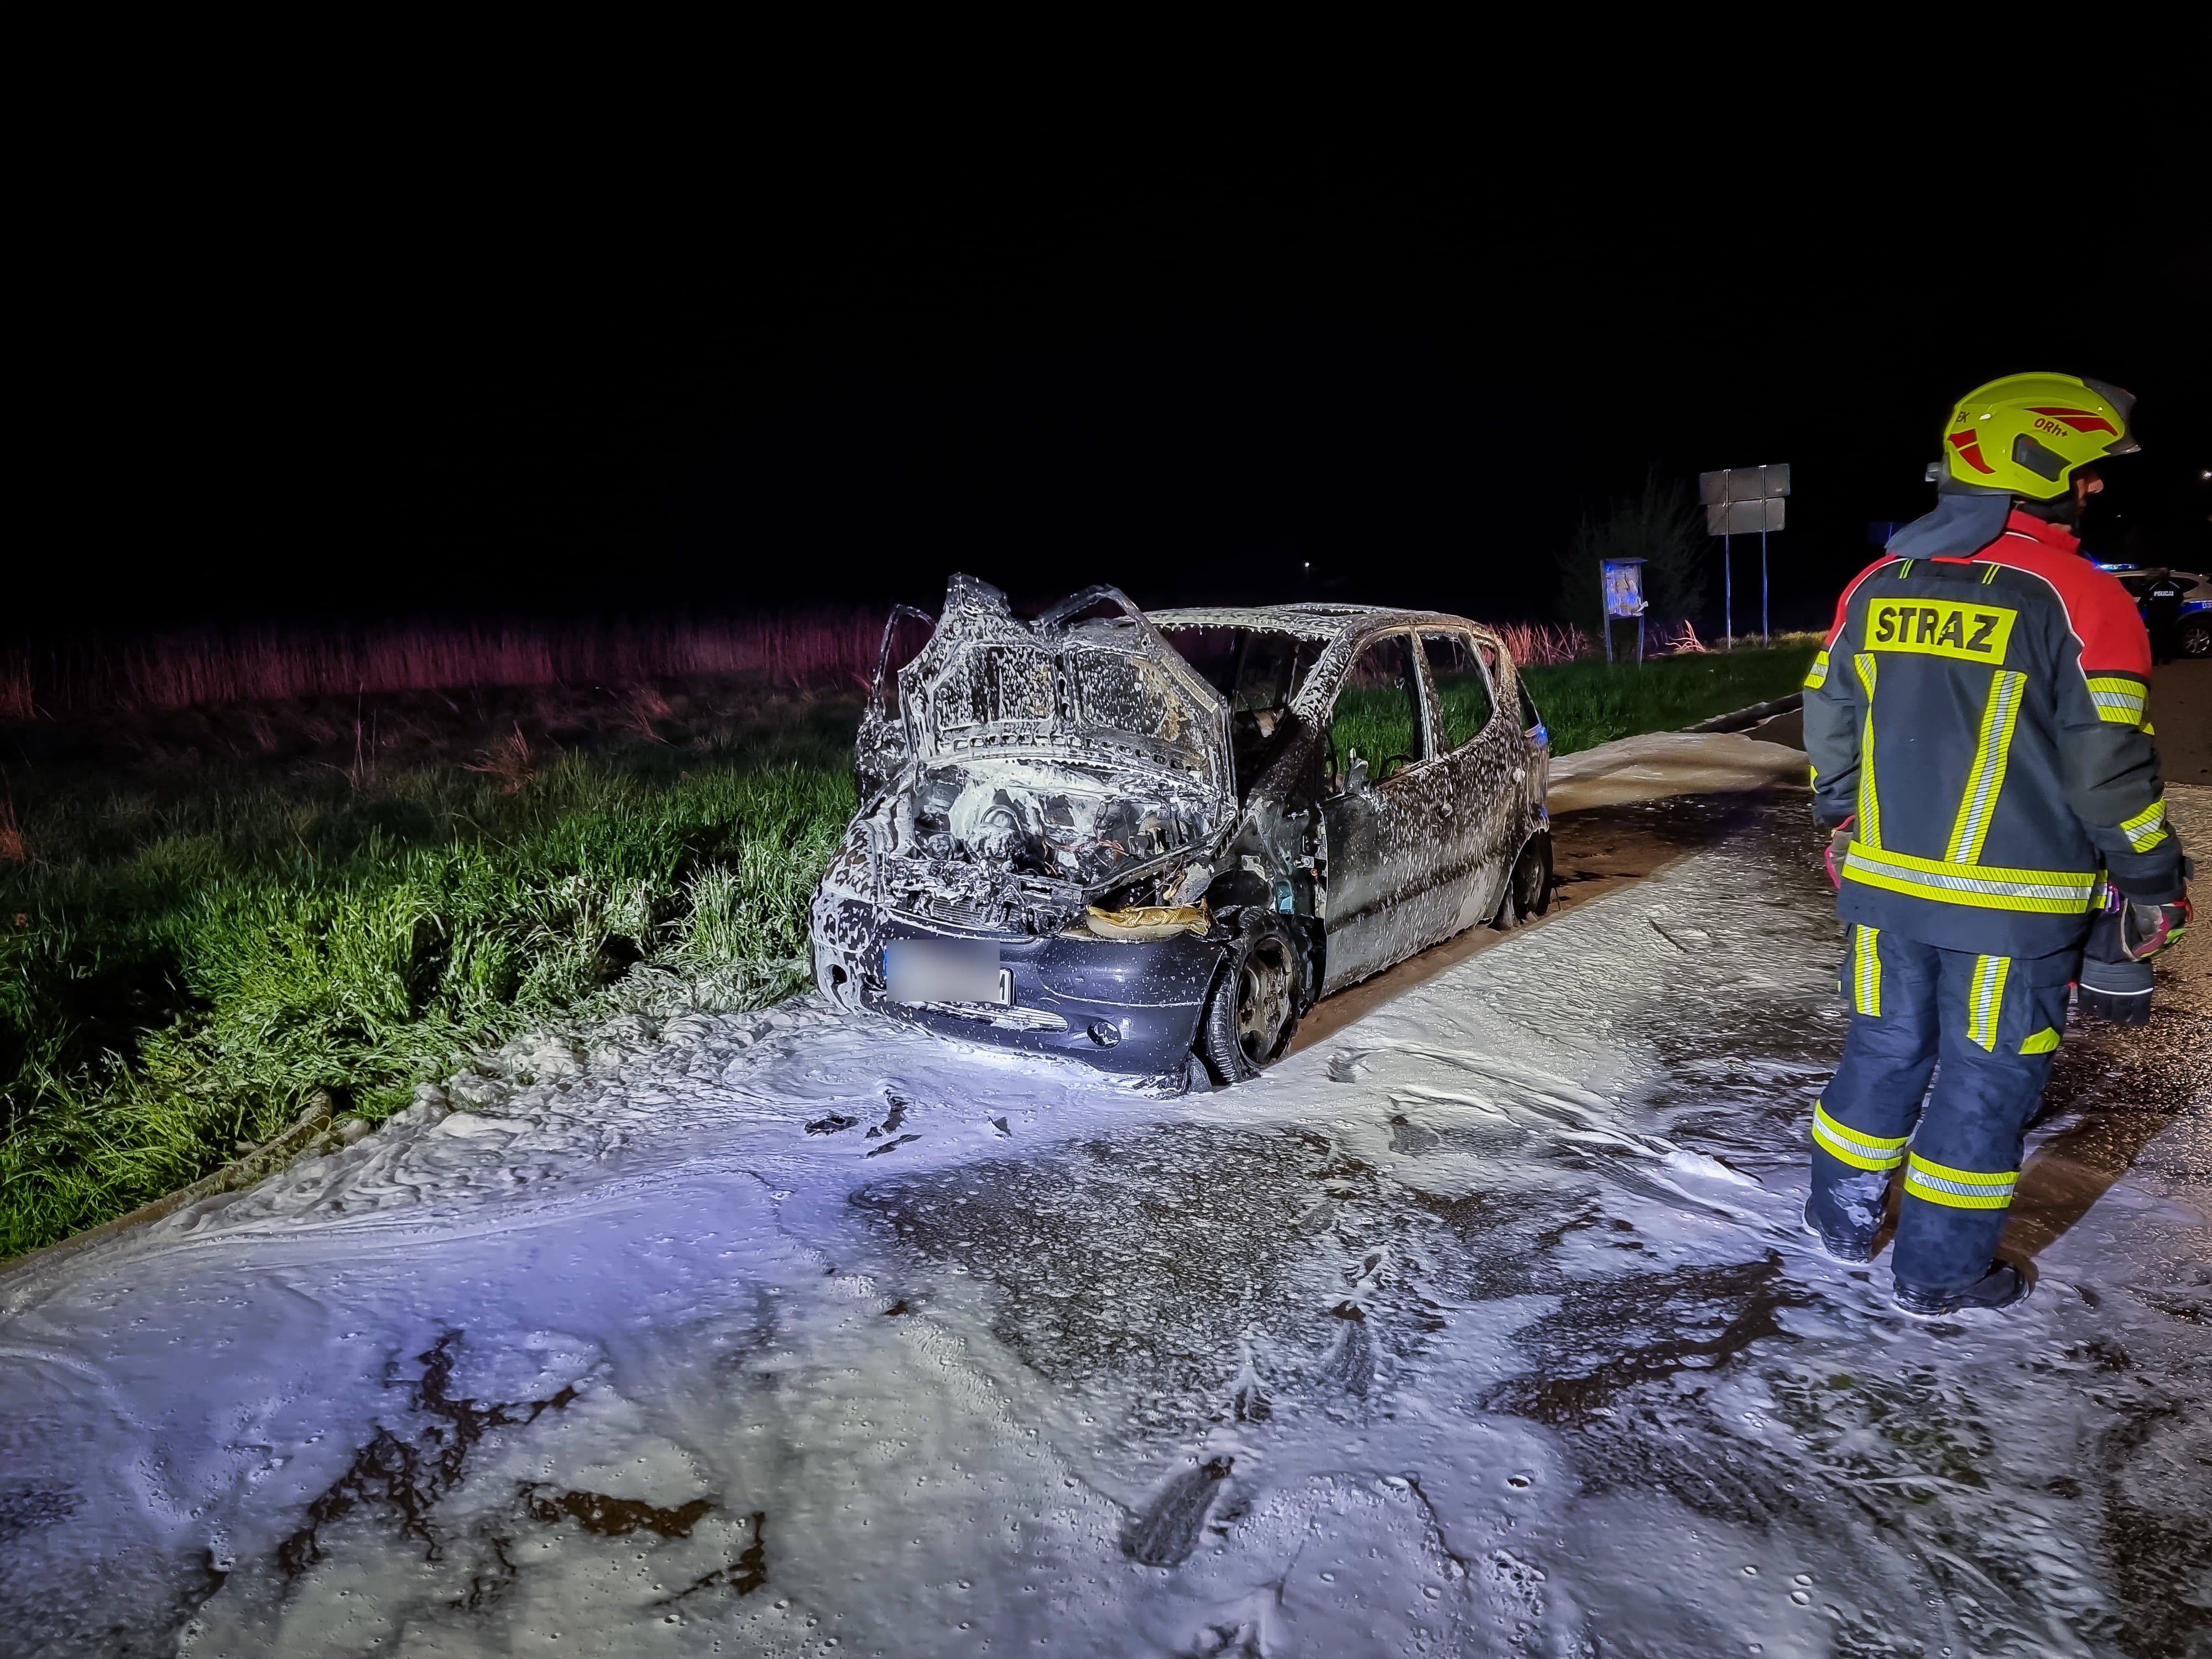 W trakcie jazdy mercedes stanął w płomieniach. Kierowca zdążył się zatrzymać i opuścić auto (zdjęcia)